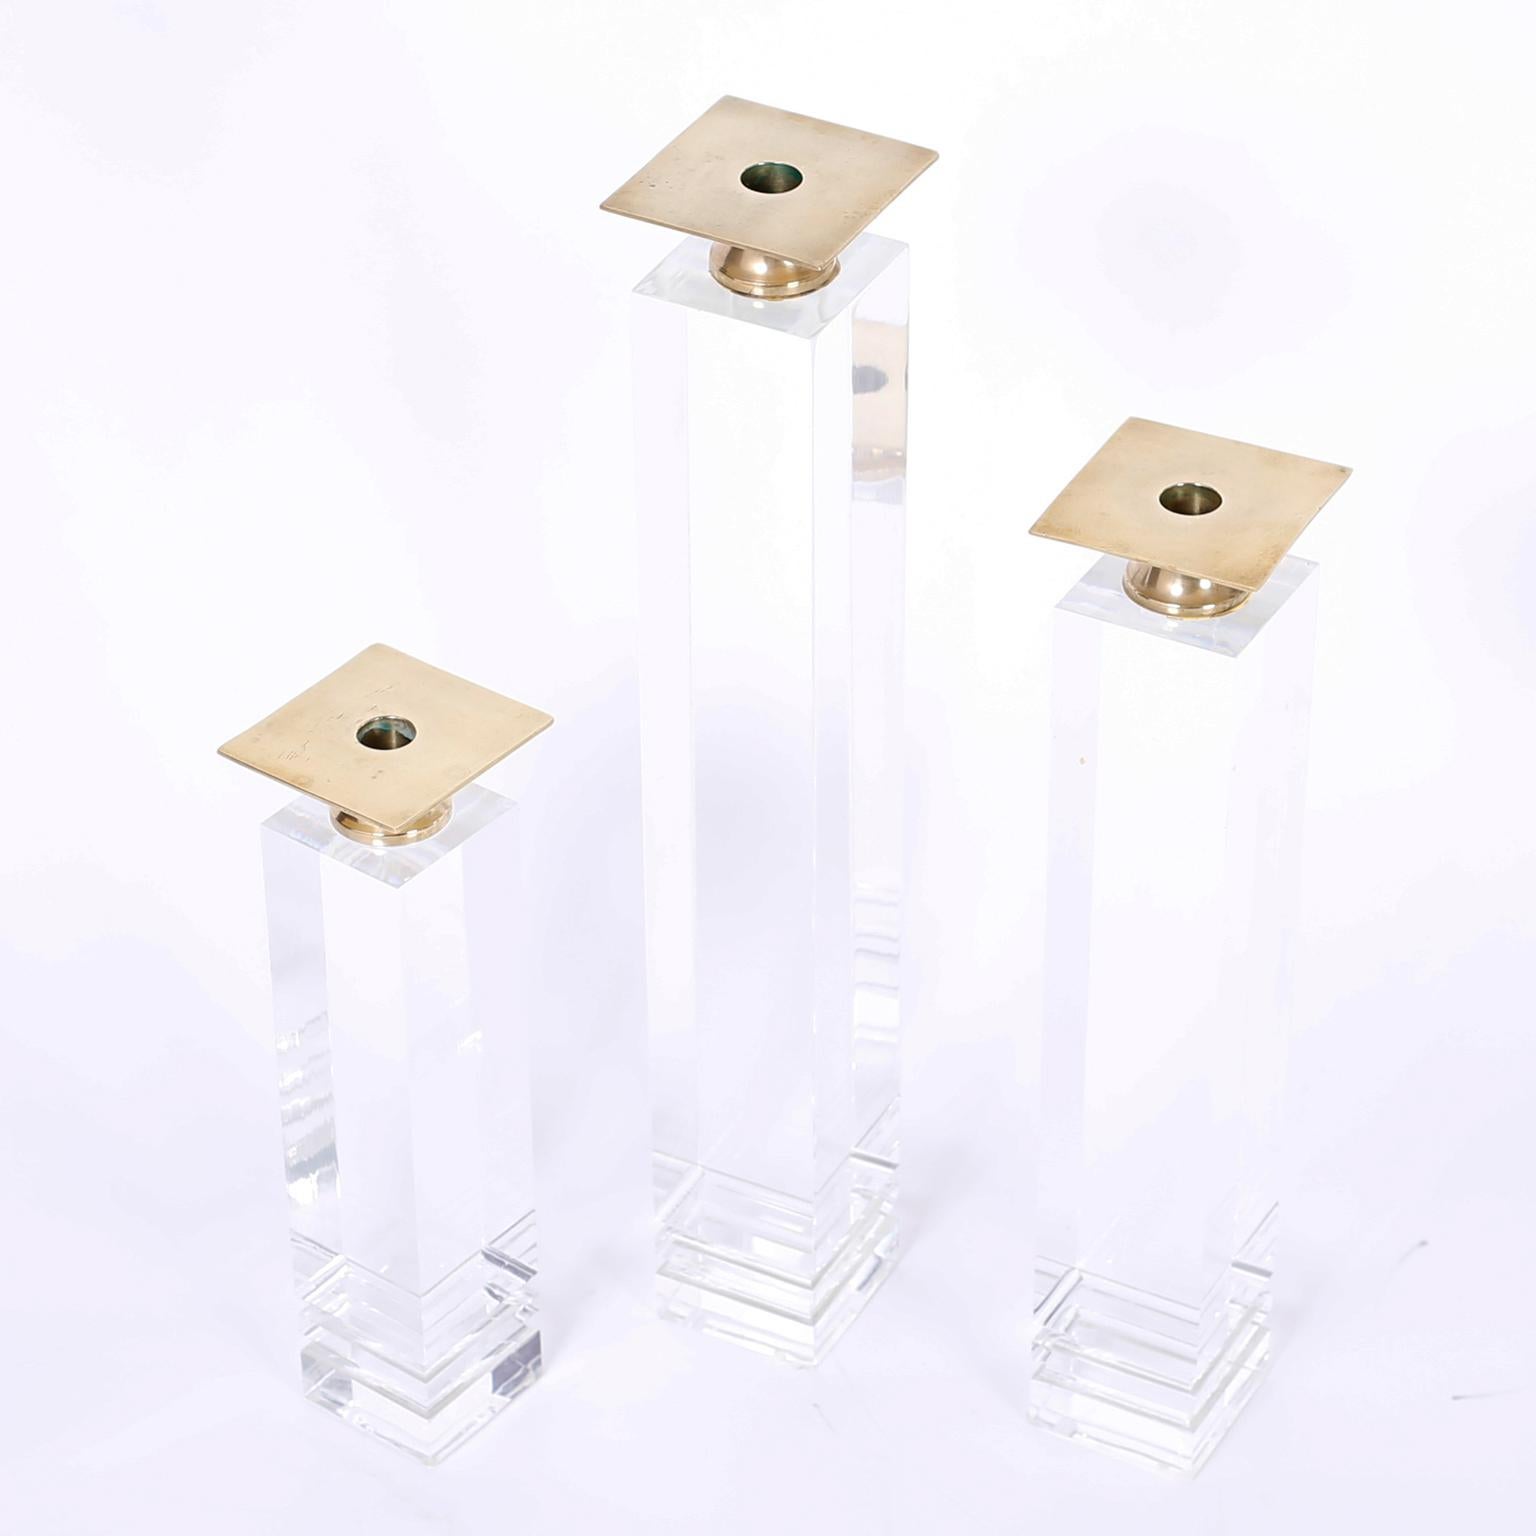 Satz von drei Lucite-Kerzenhaltern aus der Mitte des Jahrhunderts mit polierten Messing-Kerzenbechern auf architektonisch ansprechenden Acryl-Sockeln.
Maße: SM- H 13, B 3,5, T 3,5, MED- H 17, B 3,5, T 3,5, LG- H 21, B 3,5, T 3,5.